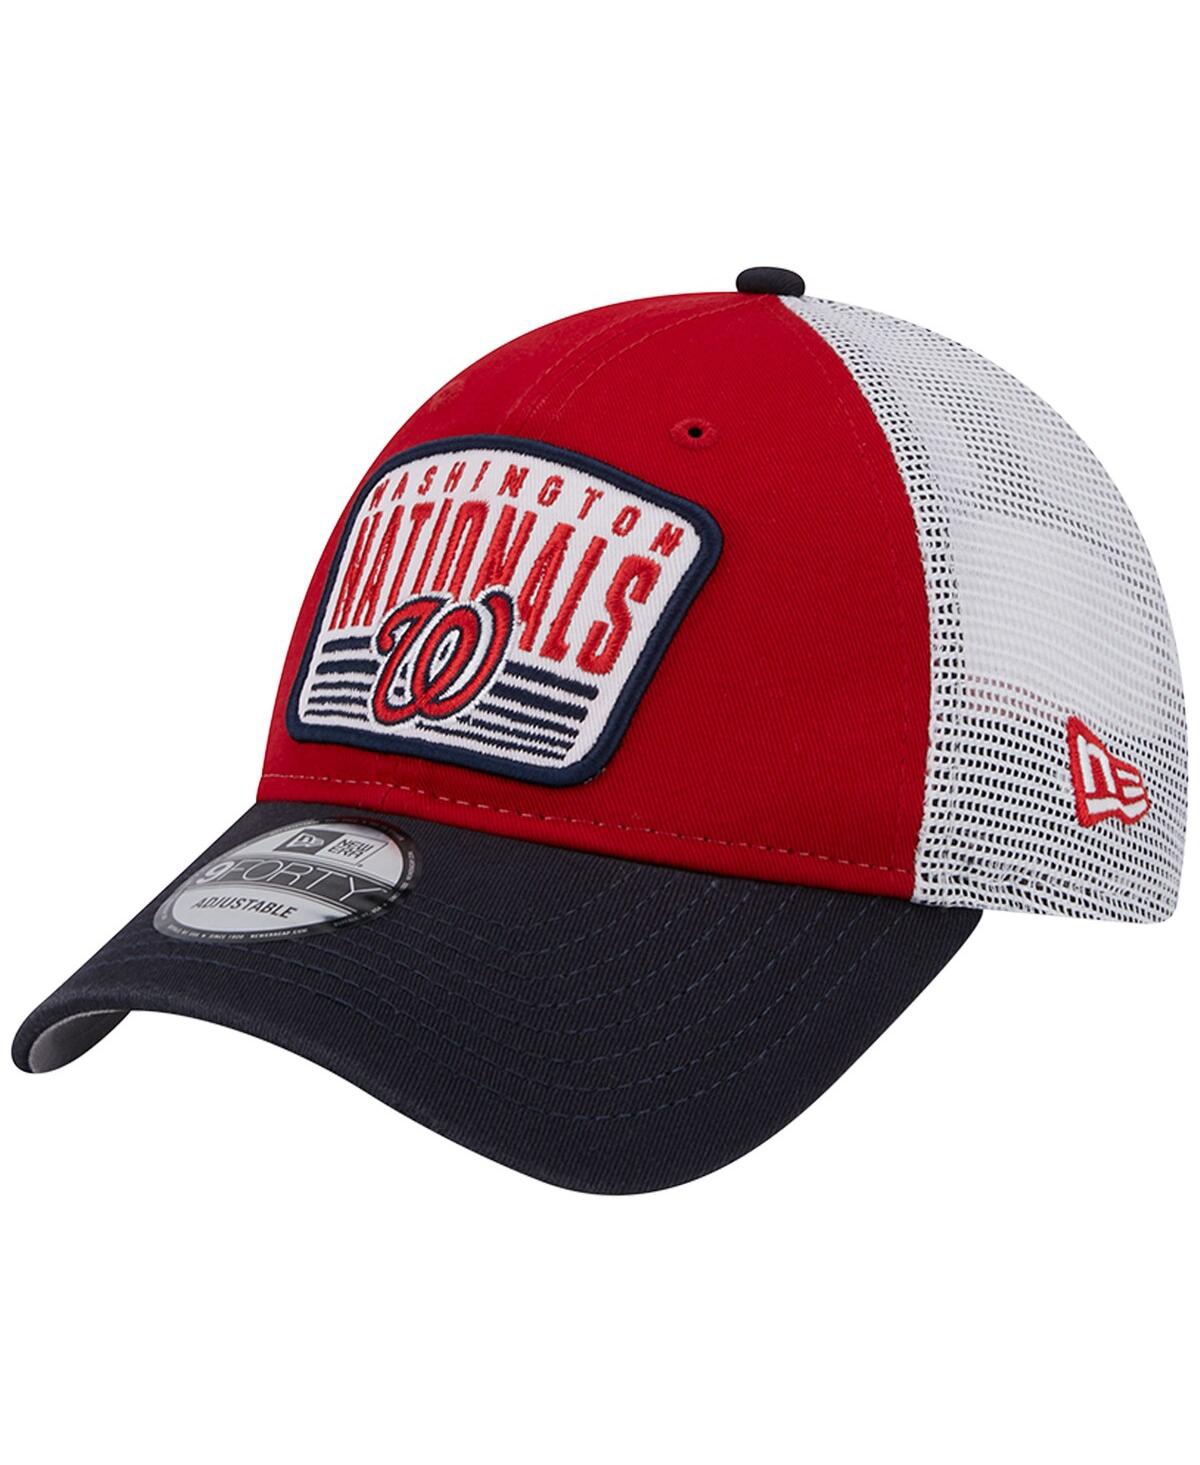 New Era Washington Nationals Basic 9FIFTY Snapback Cap - Red/White - One Size